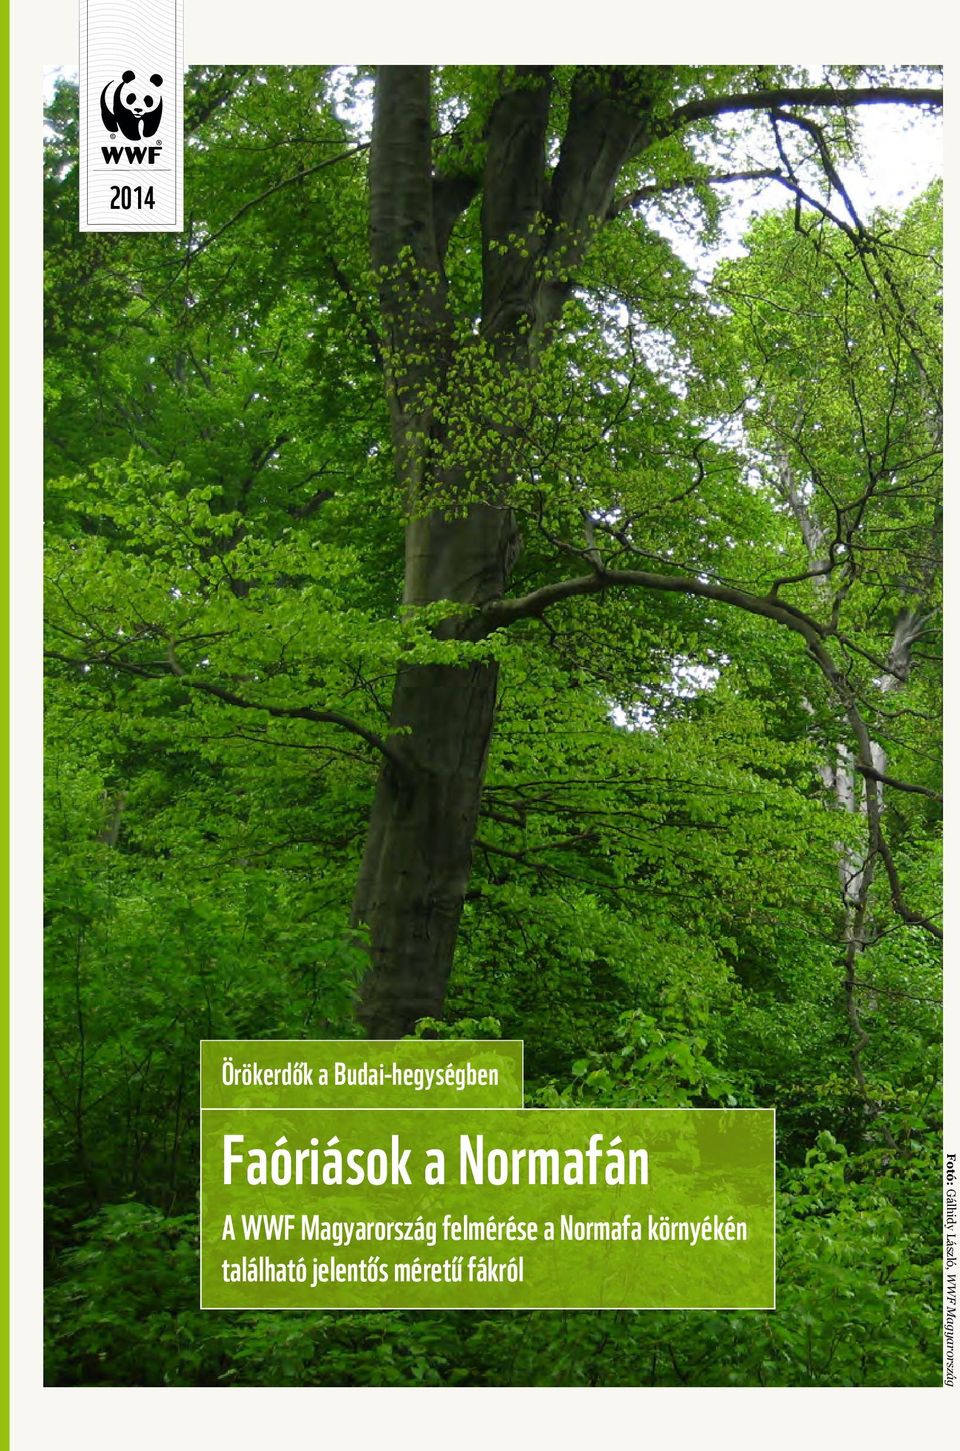 Normafán A WWF Magyarország